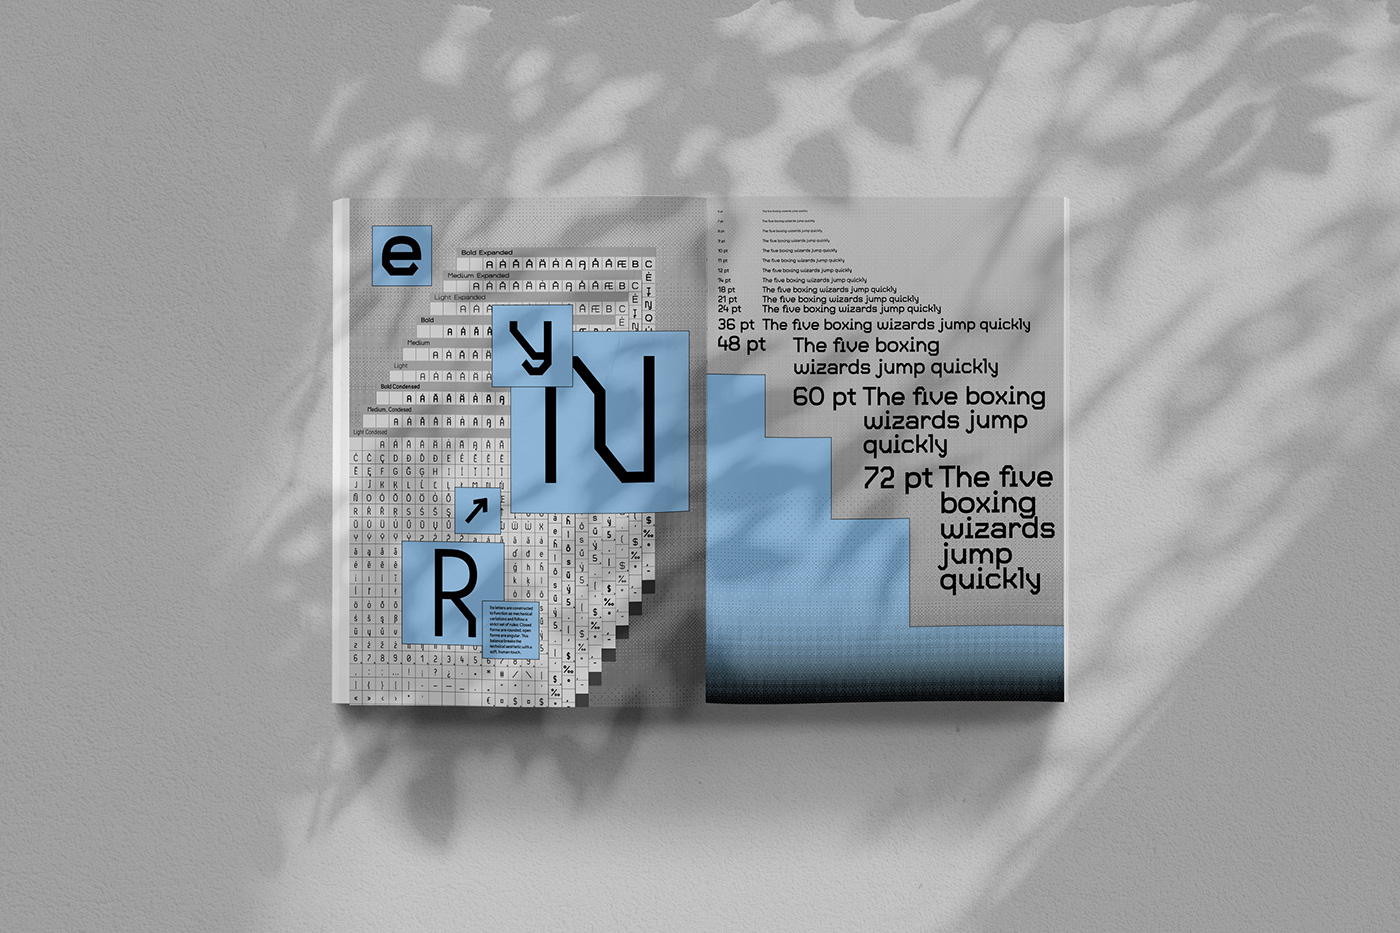 Brutalism brutalism design interactive poster Type Specimen type specimen poster type specimens typographic poster typography poster